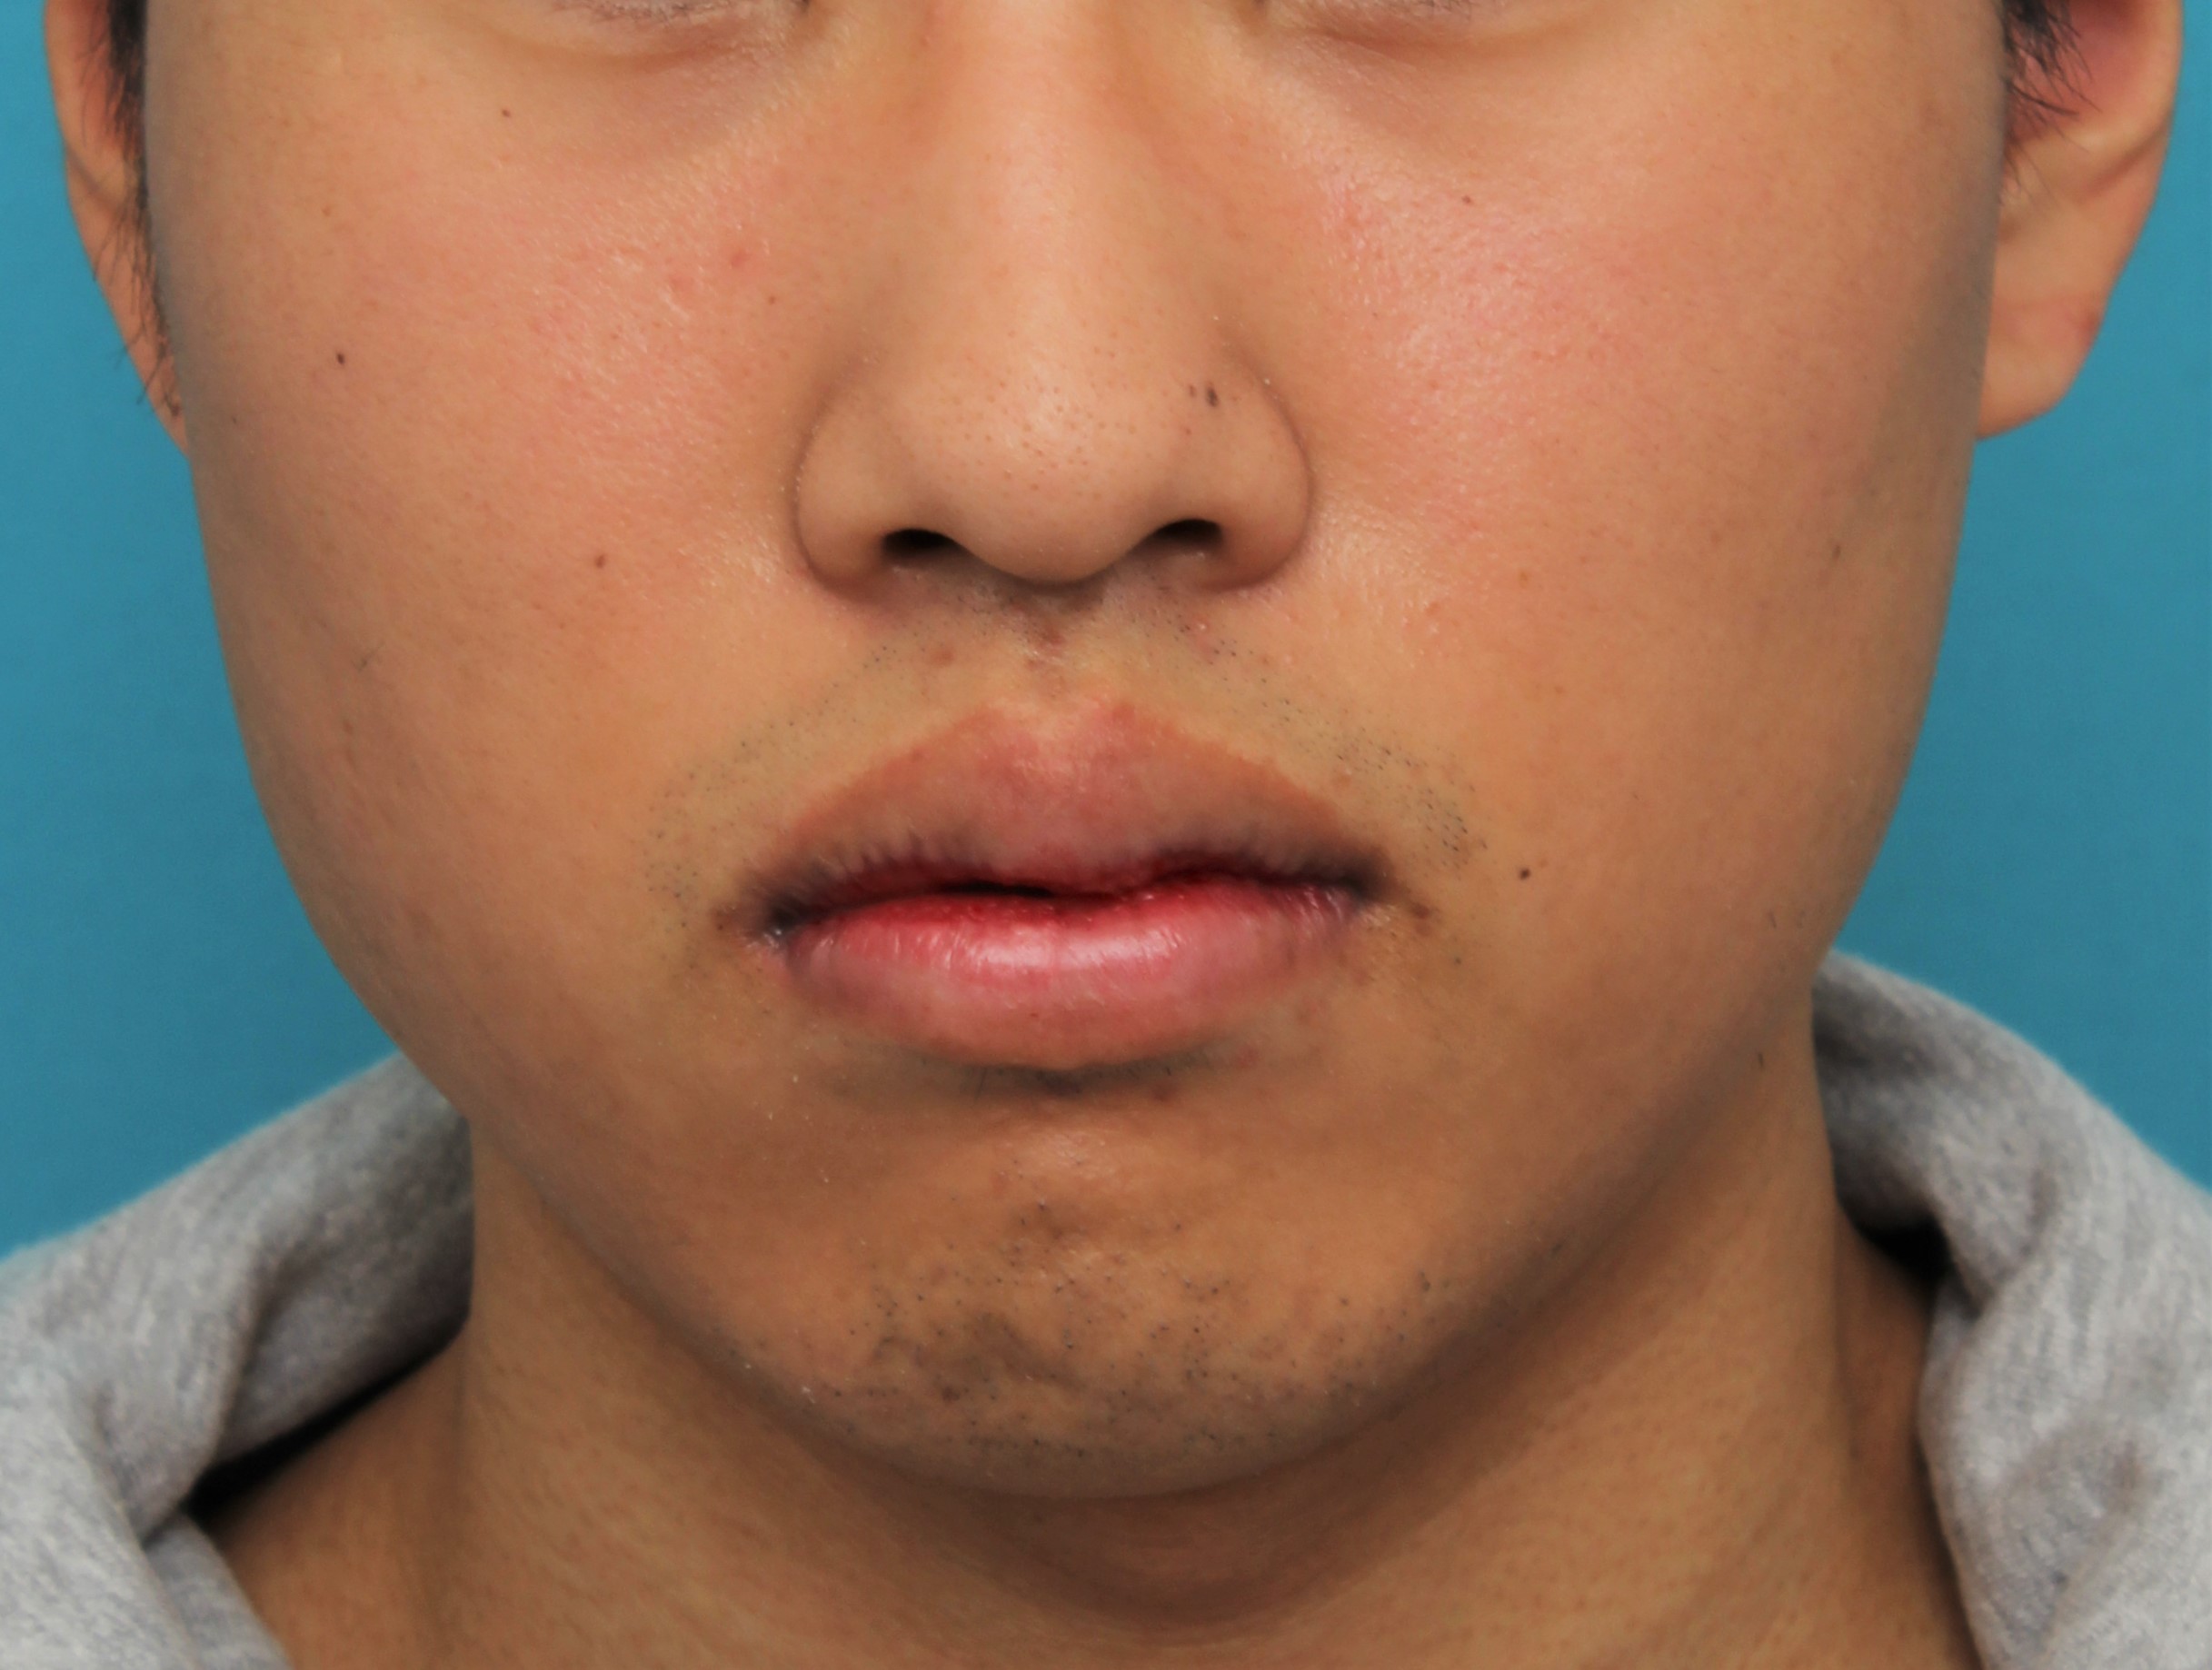 唇を薄く（口唇縮小術）,手術で上下の唇を薄くした20代男性の症例写真,8日後,口を閉じた状態,mainpic_usuku017d.jpg